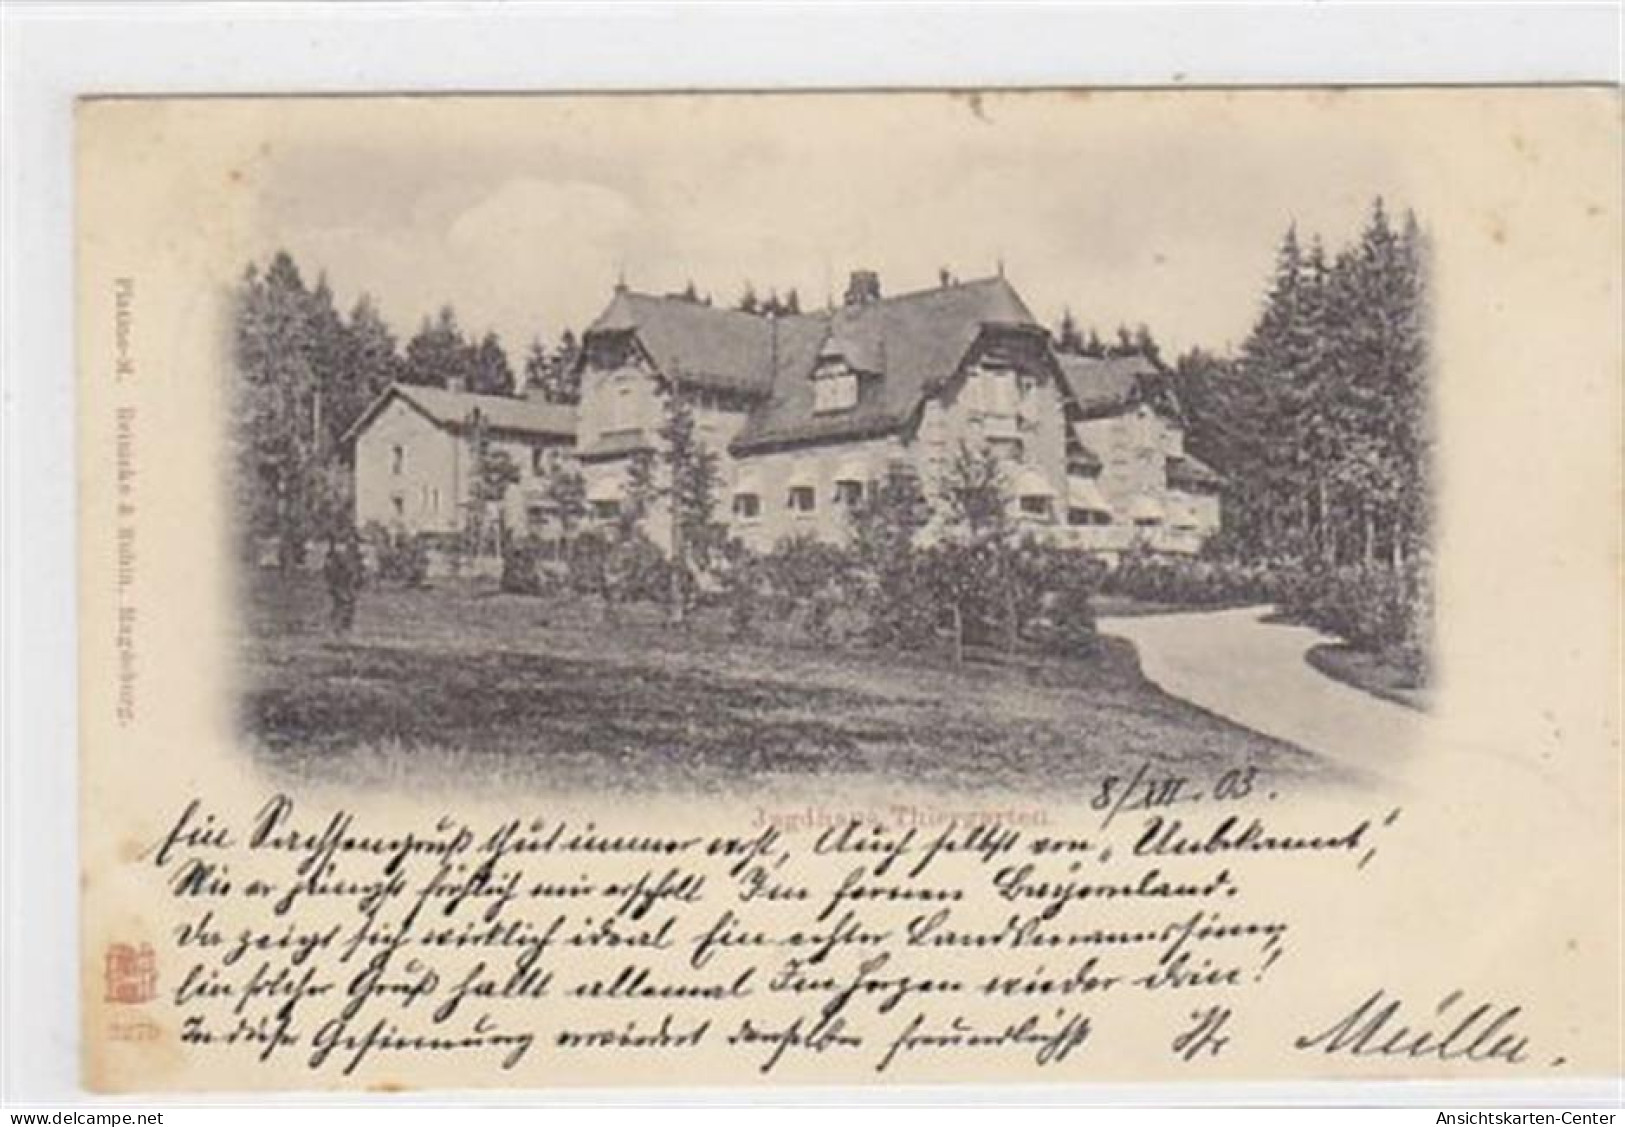 39032011 - Jagdhaus Thiergarten Bei Regensburg Gelaufen Am 10.12.1903. Vorderseite Leicht Stockfleckig, Sonst Gut Erhal - Regensburg